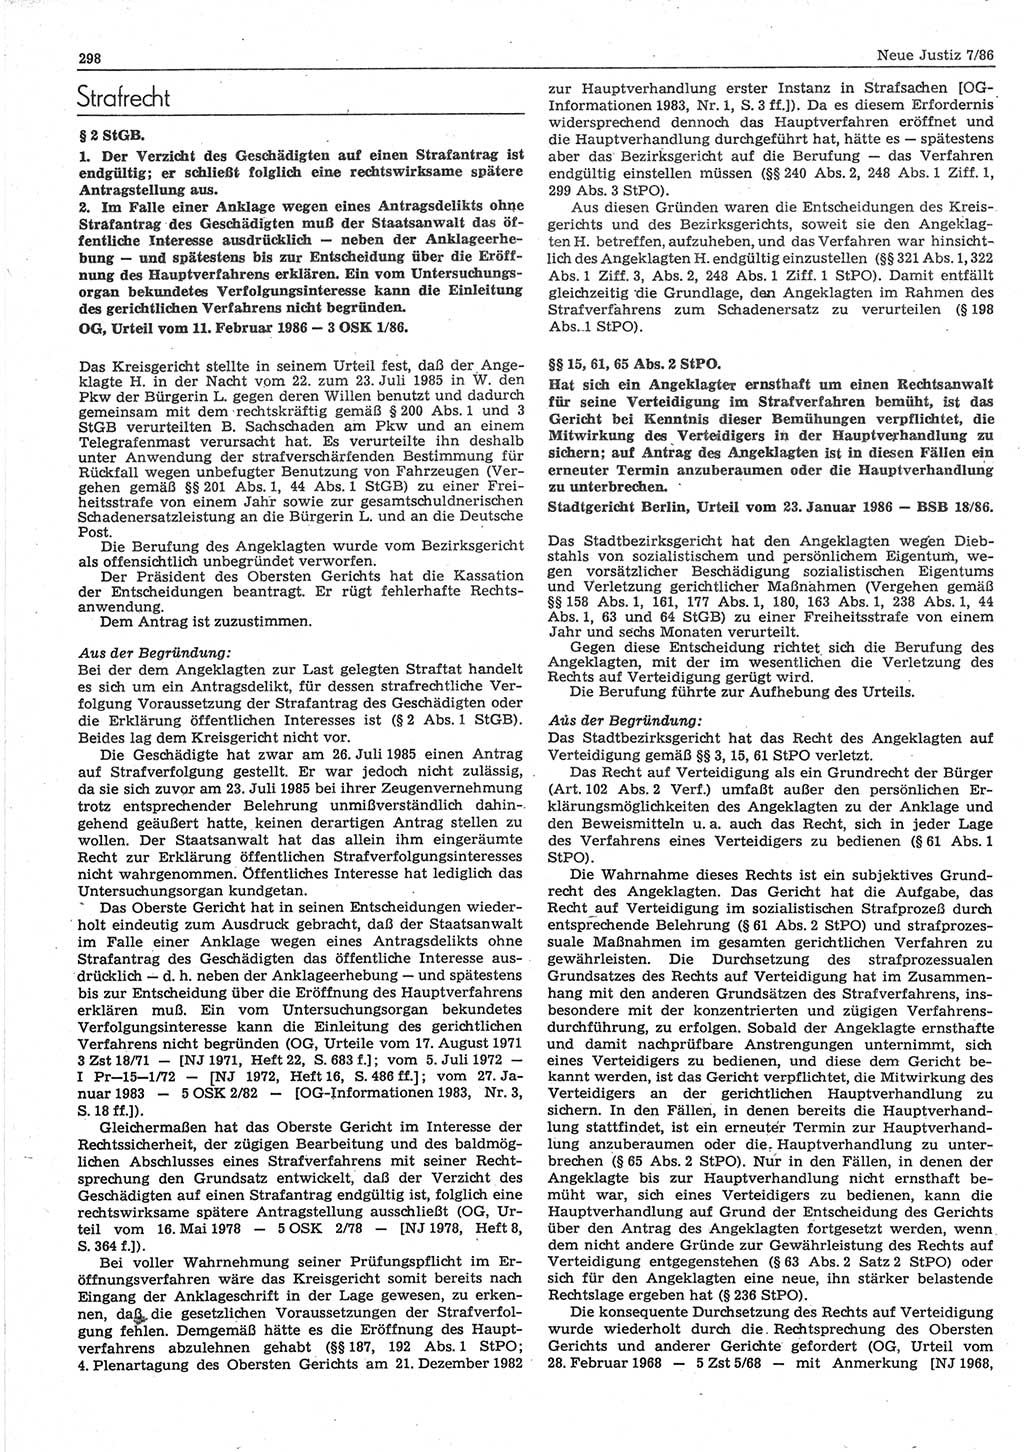 Neue Justiz (NJ), Zeitschrift für sozialistisches Recht und Gesetzlichkeit [Deutsche Demokratische Republik (DDR)], 40. Jahrgang 1986, Seite 298 (NJ DDR 1986, S. 298)